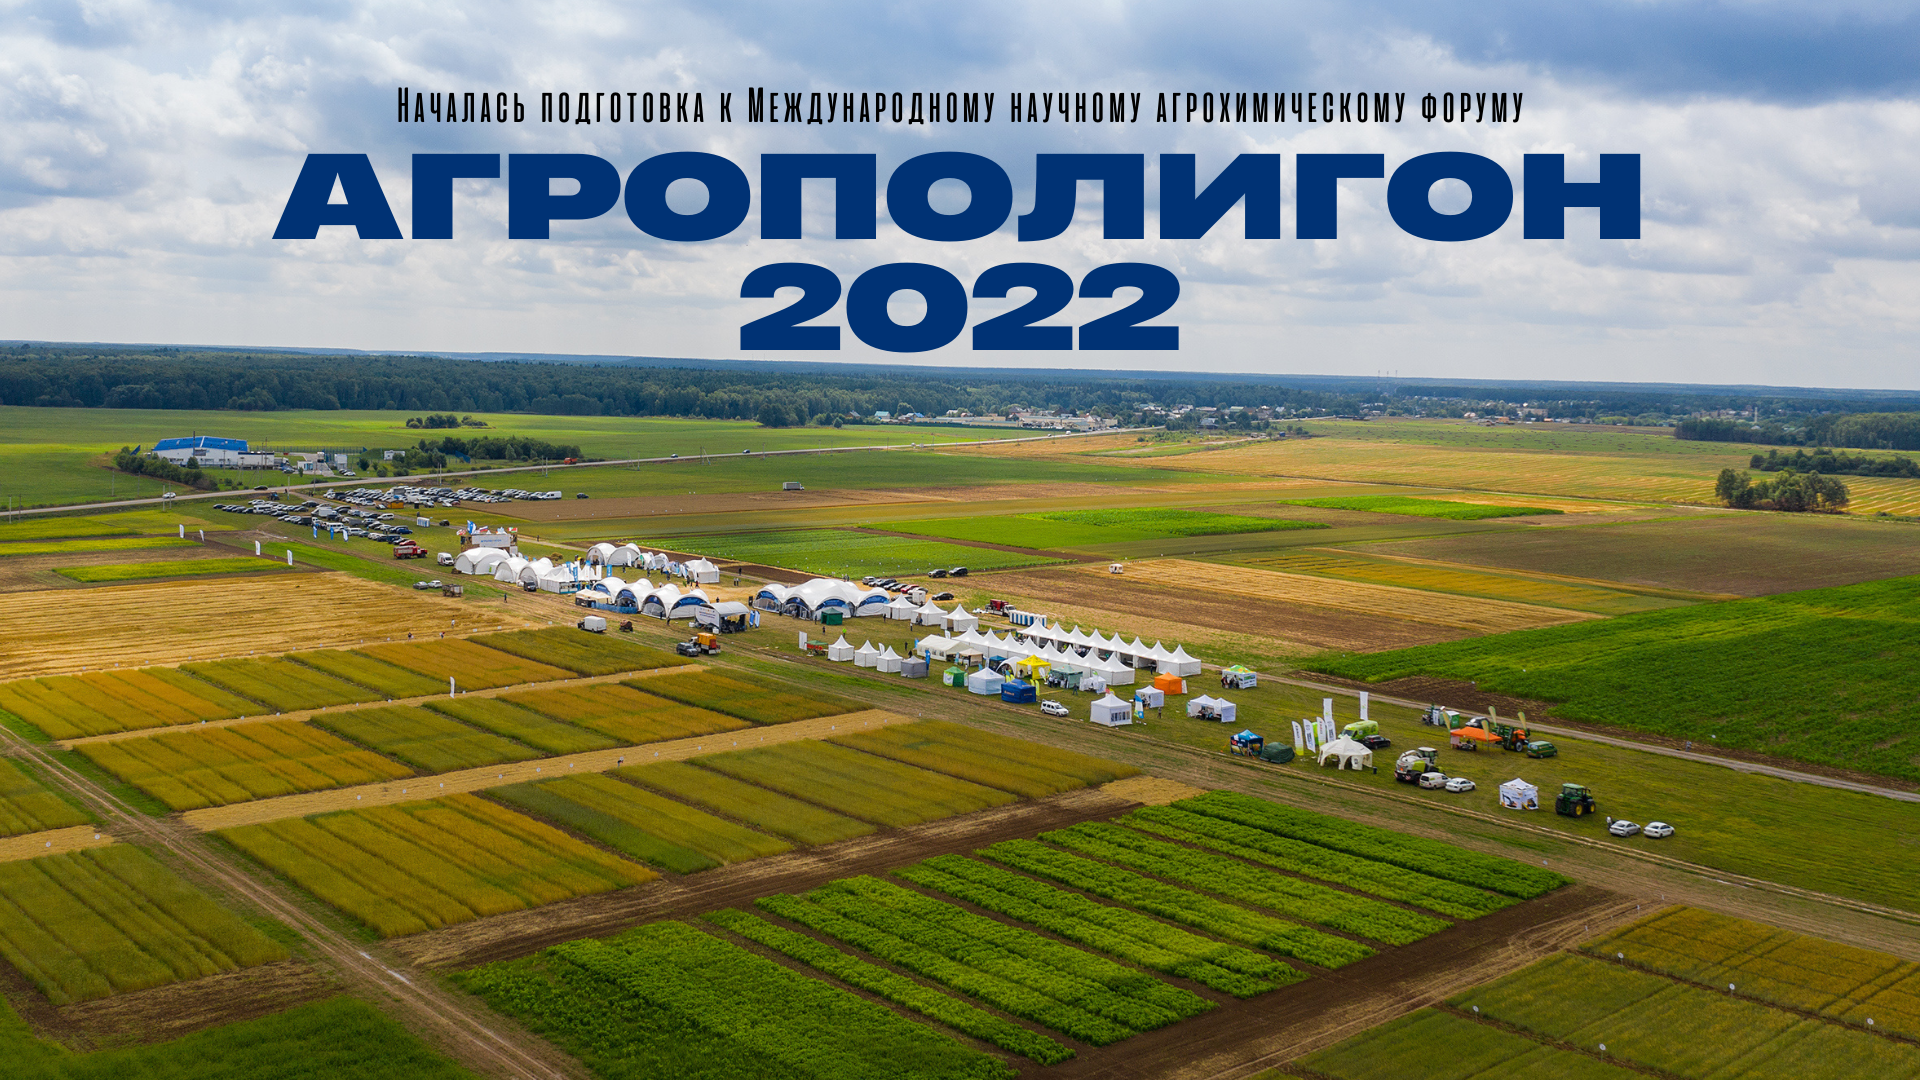 Началась подготовка к Международному научному агрохимическому форуму «Агрополигон 2022»